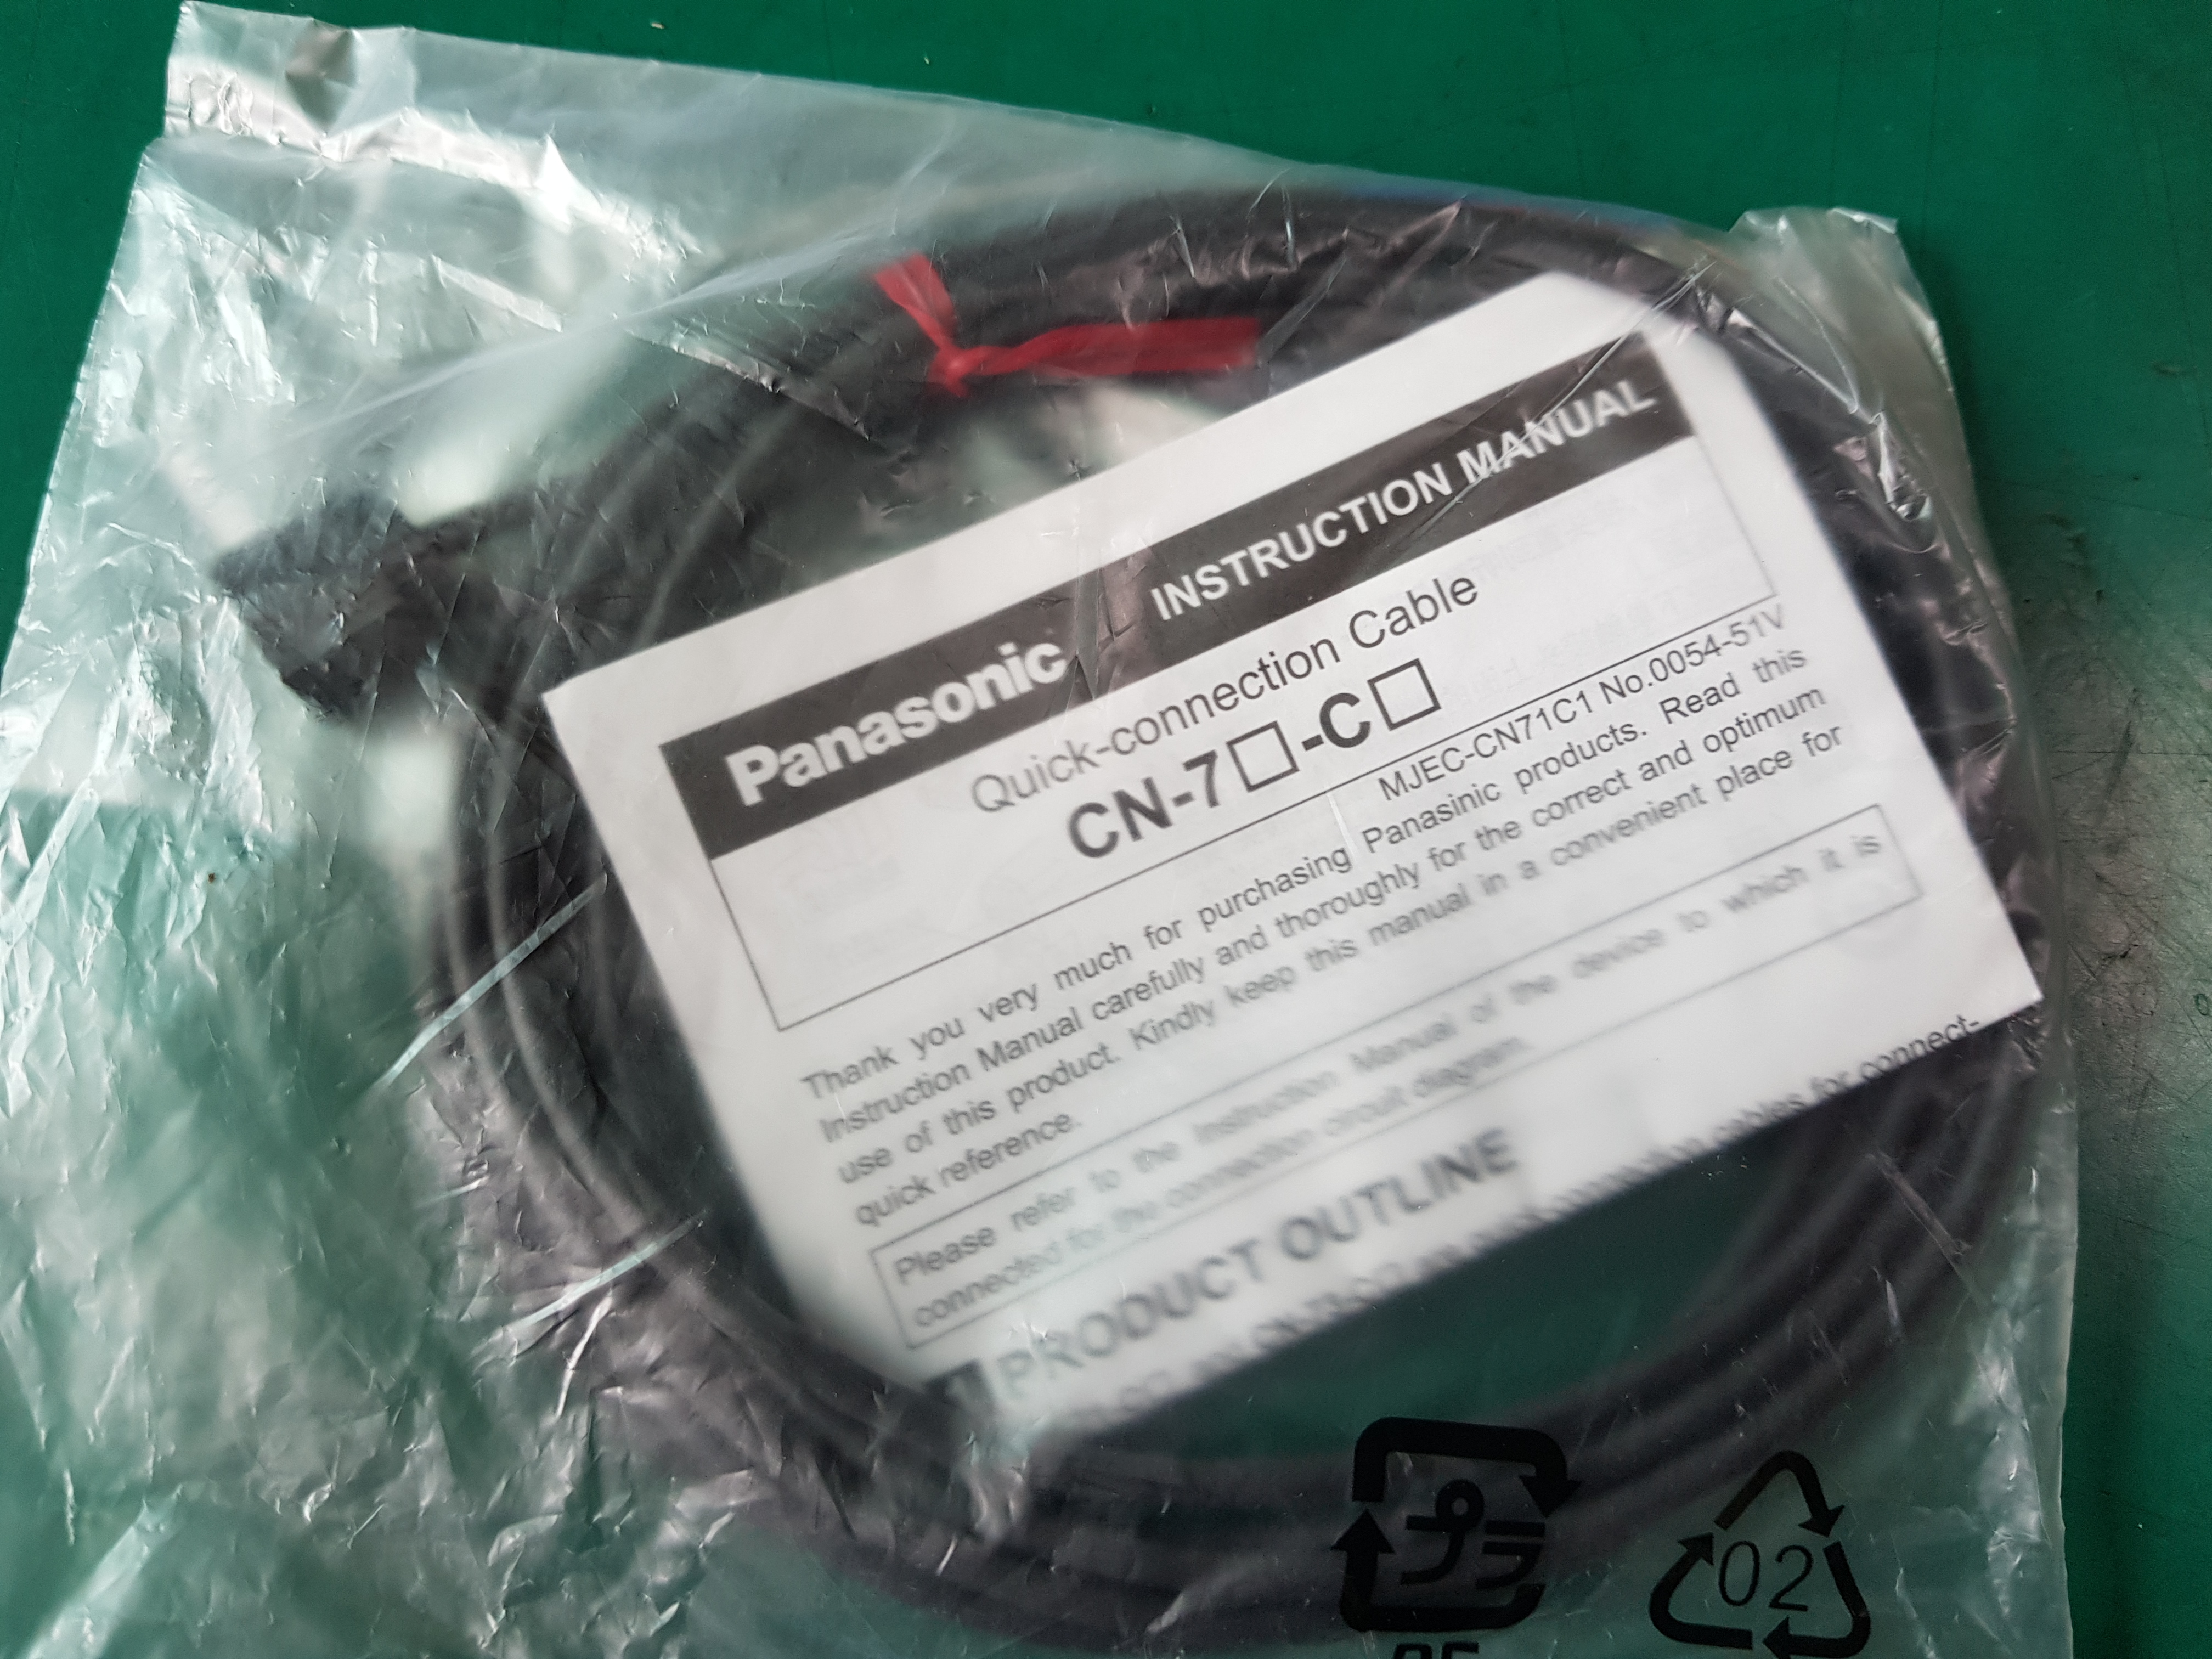 PANASONIC SENSOR QUICK-CONNECTION CABLE CN-73-C2(미사용품)